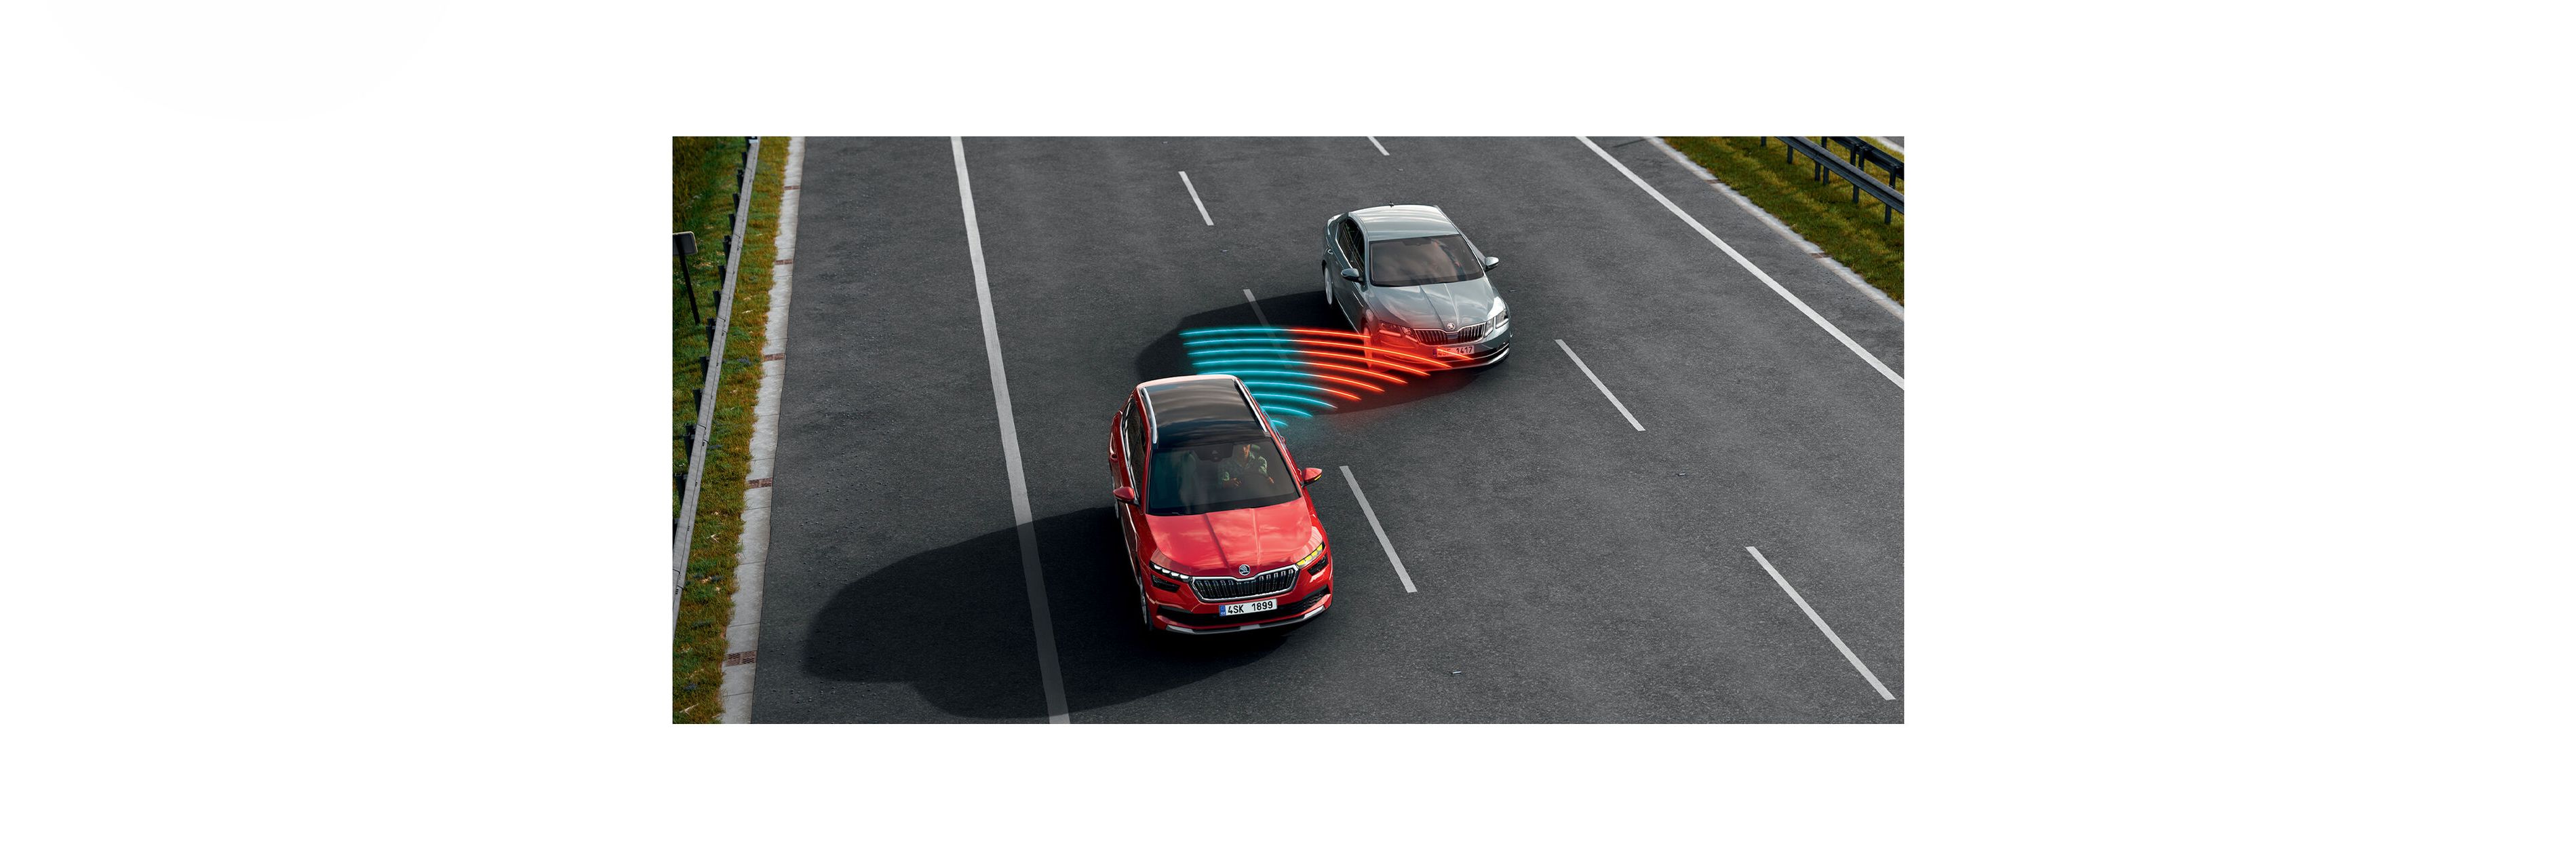 Shihet ilustrimi i funksionimit të asistentit të ndryshimit të korsisë dhe asistentit anësor tek Škoda Kamiq